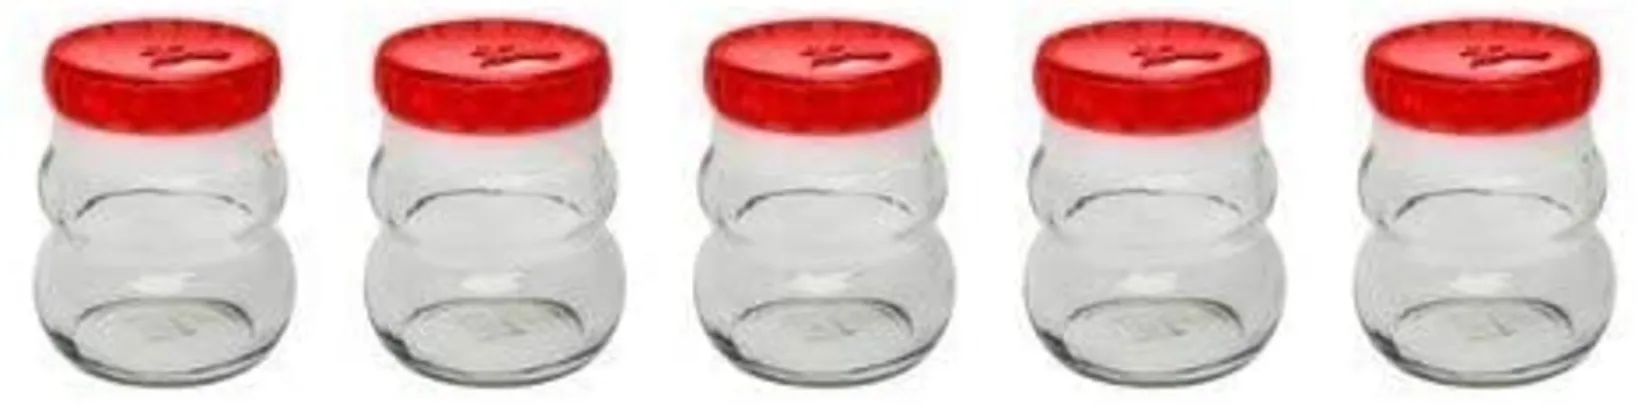 Conjunto De Potes De Vidro Redondo Para Temperos 150Ml - 5 Peças Branco - Oxford Daily R$12